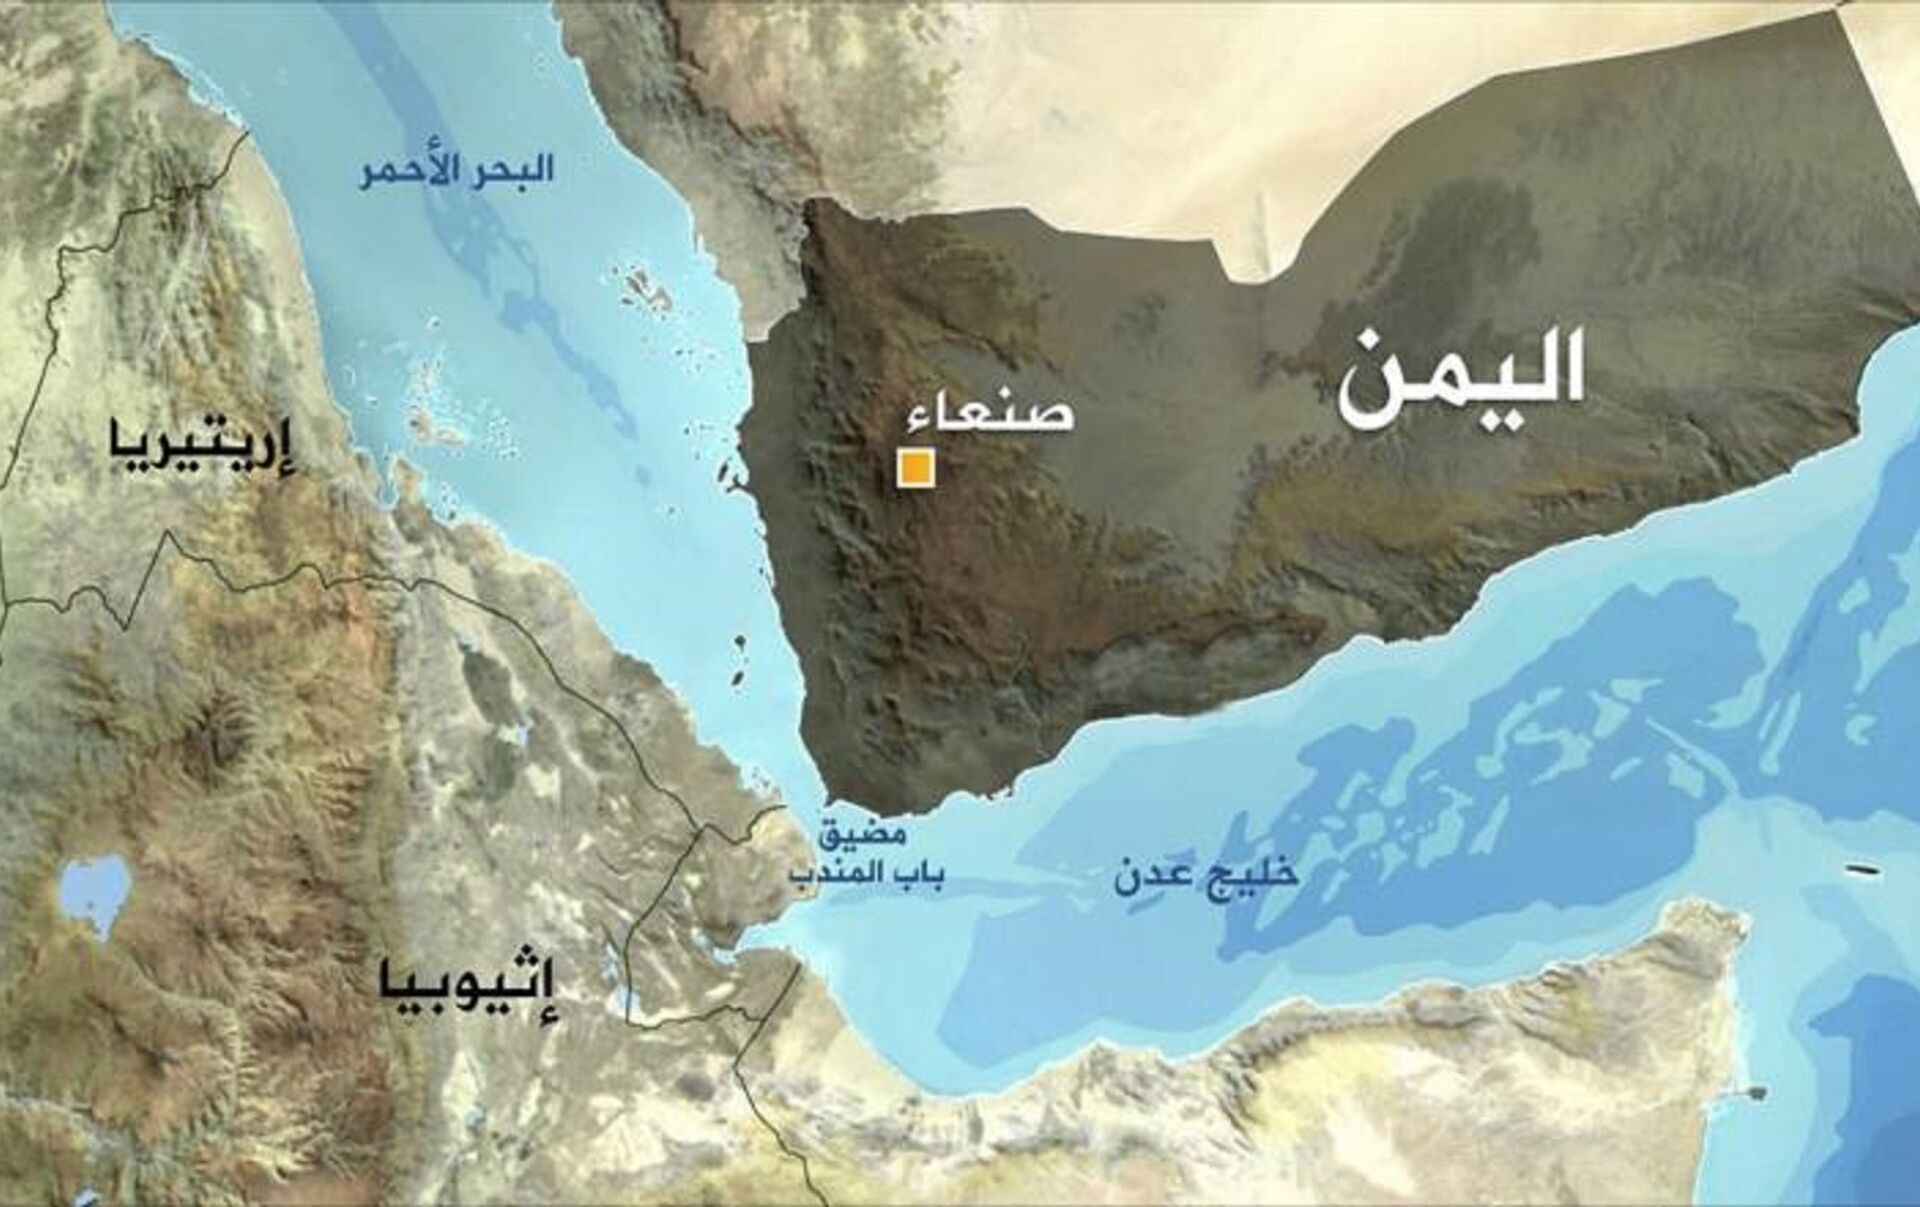 خبراء يتوقعون ارتفاع أقساط التأمين على السفن قبالة السواحل اليمنية بسبب الهجمات الأخيرة